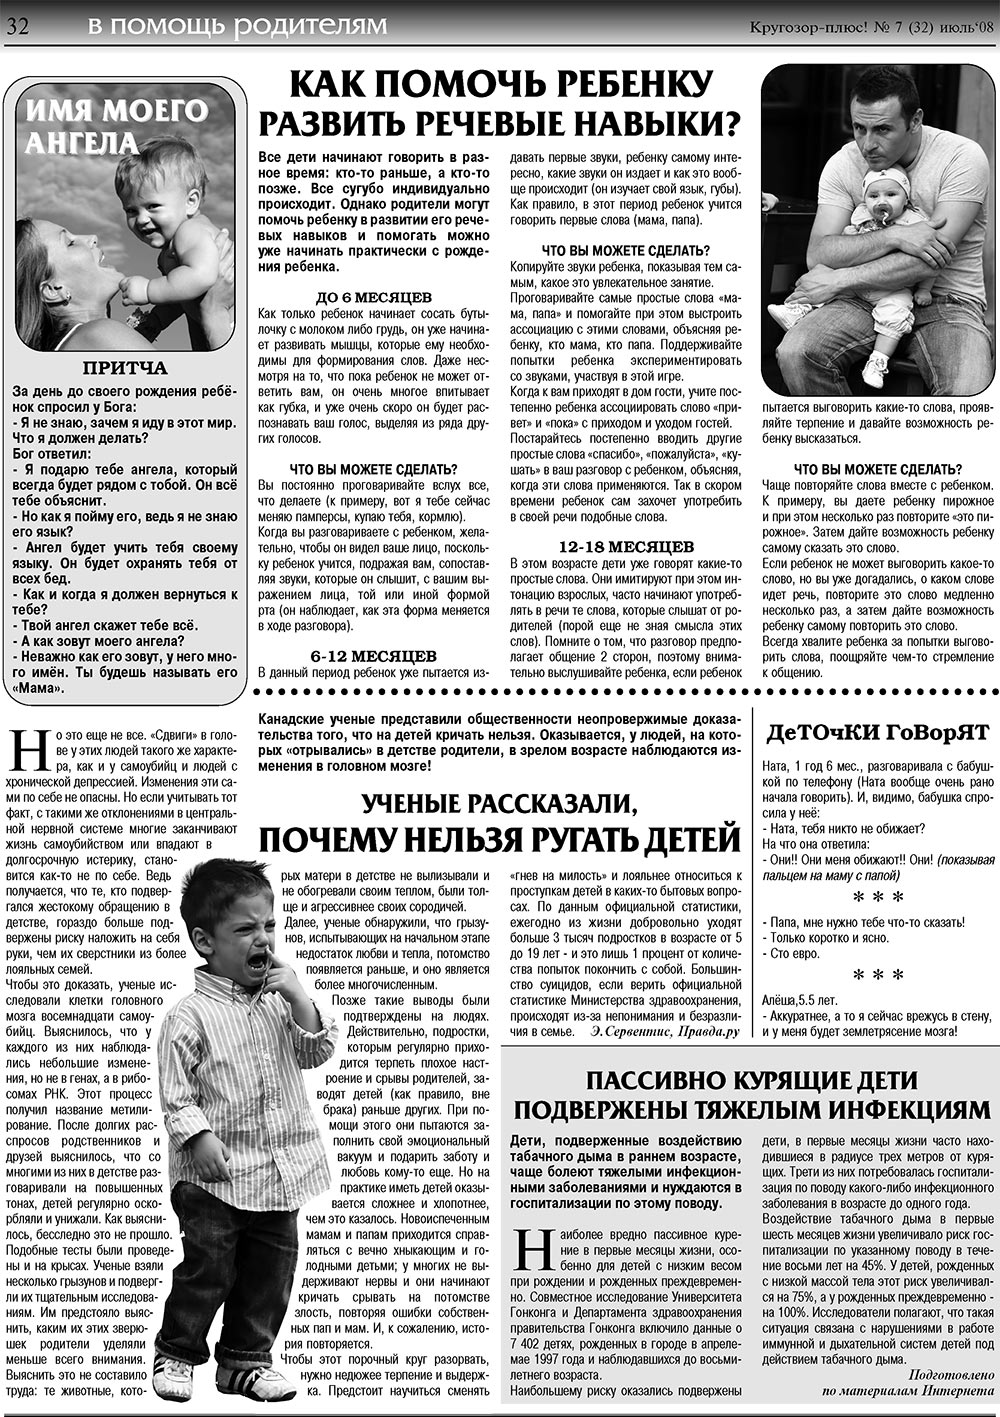 Кругозор плюс!, газета. 2008 №7 стр.32